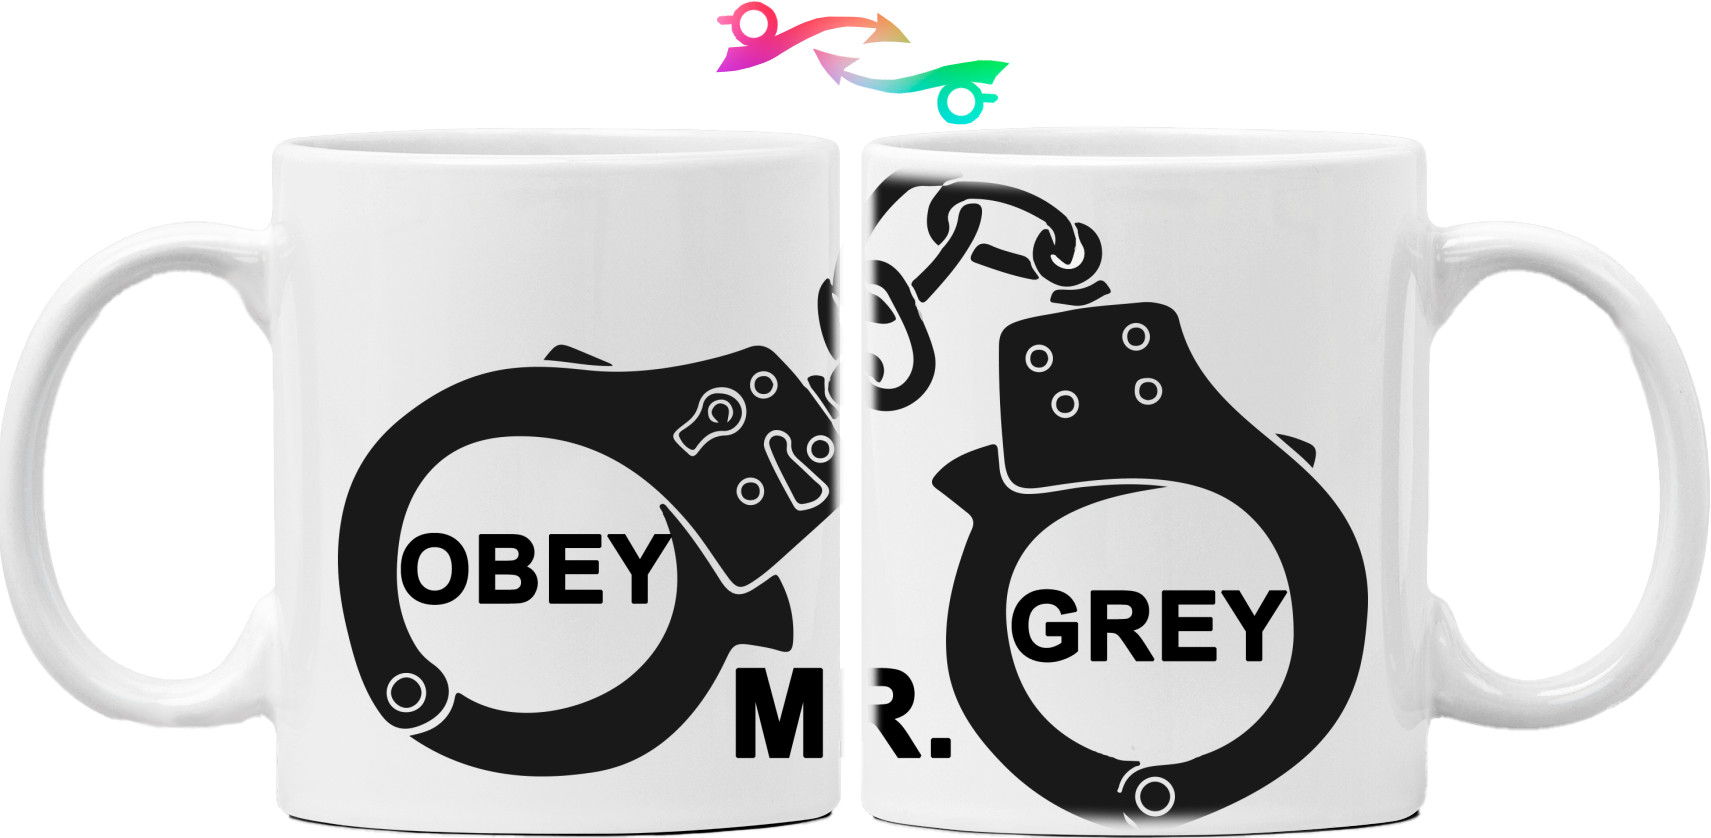 Obey Mr. Grey 3